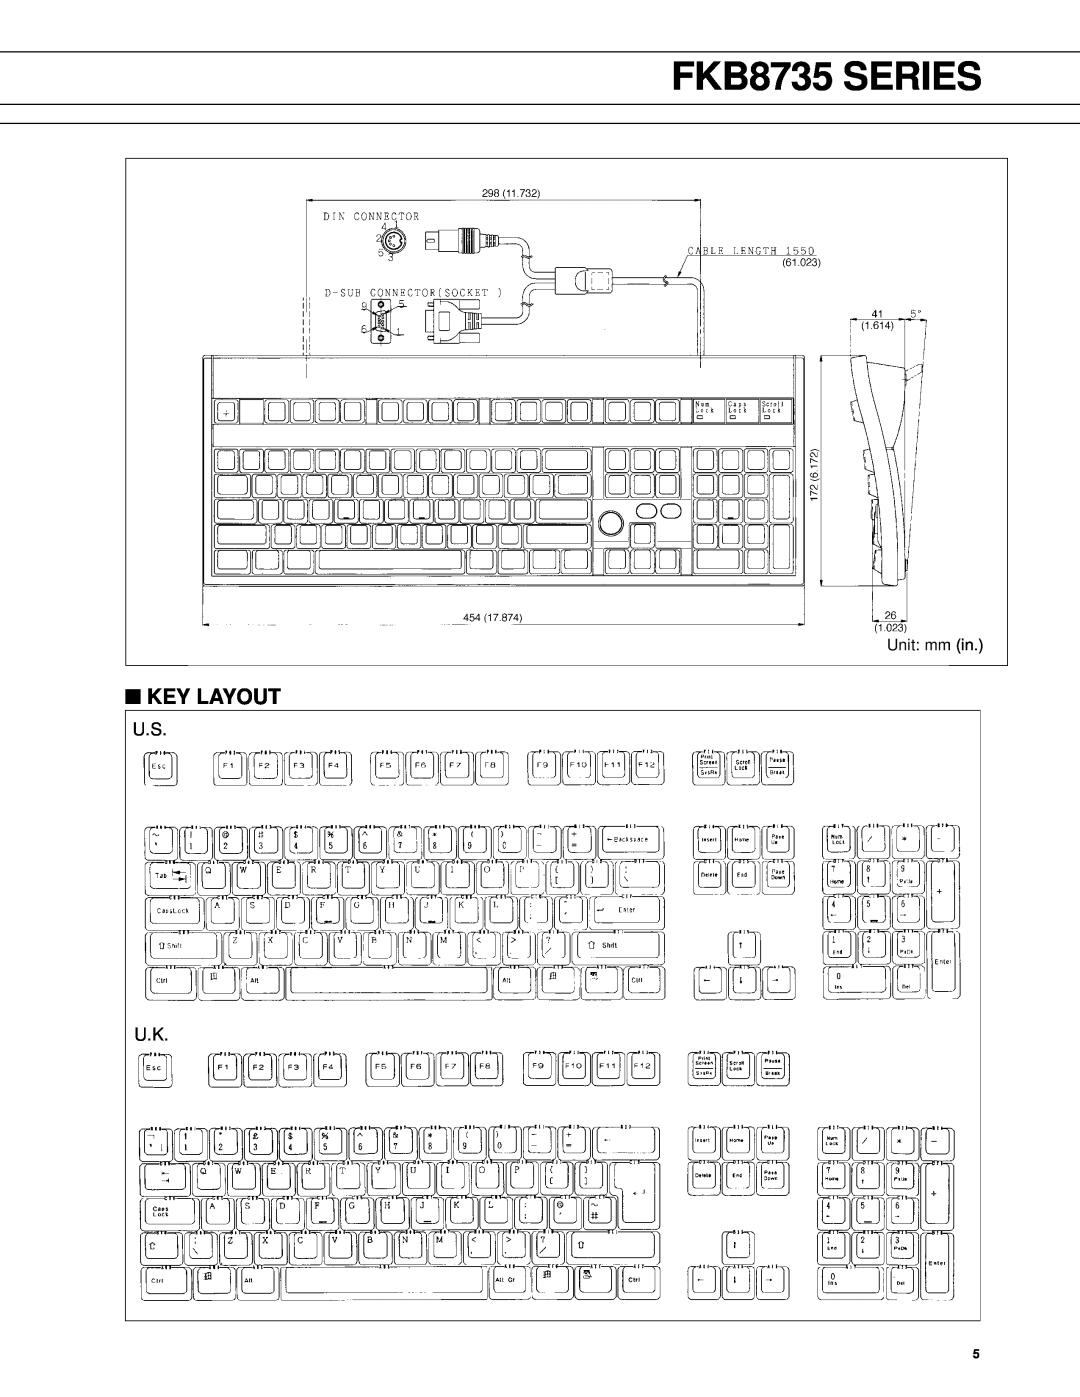 Fujitsu FKB8735 Series manual Key Layout, FKB8735 SERIES, U.S U.K 